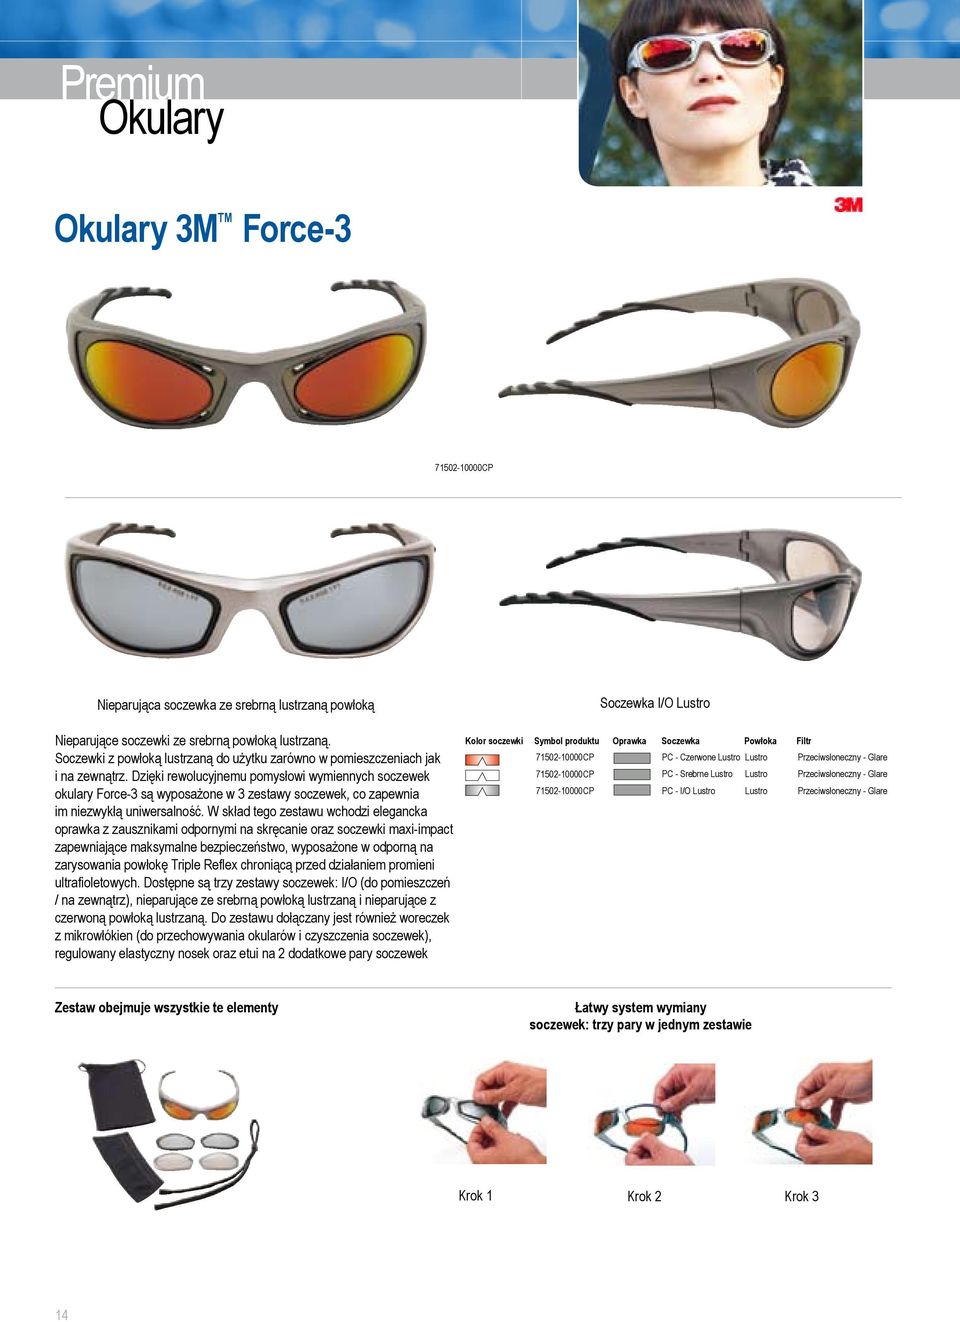 Dzięki rewolucyjnemu pomysłowi wymiennych soczewek okulary orce-3 są wyposażone w 3 zestawy soczewek, co zapewnia im niezwykłą uniwersalność.